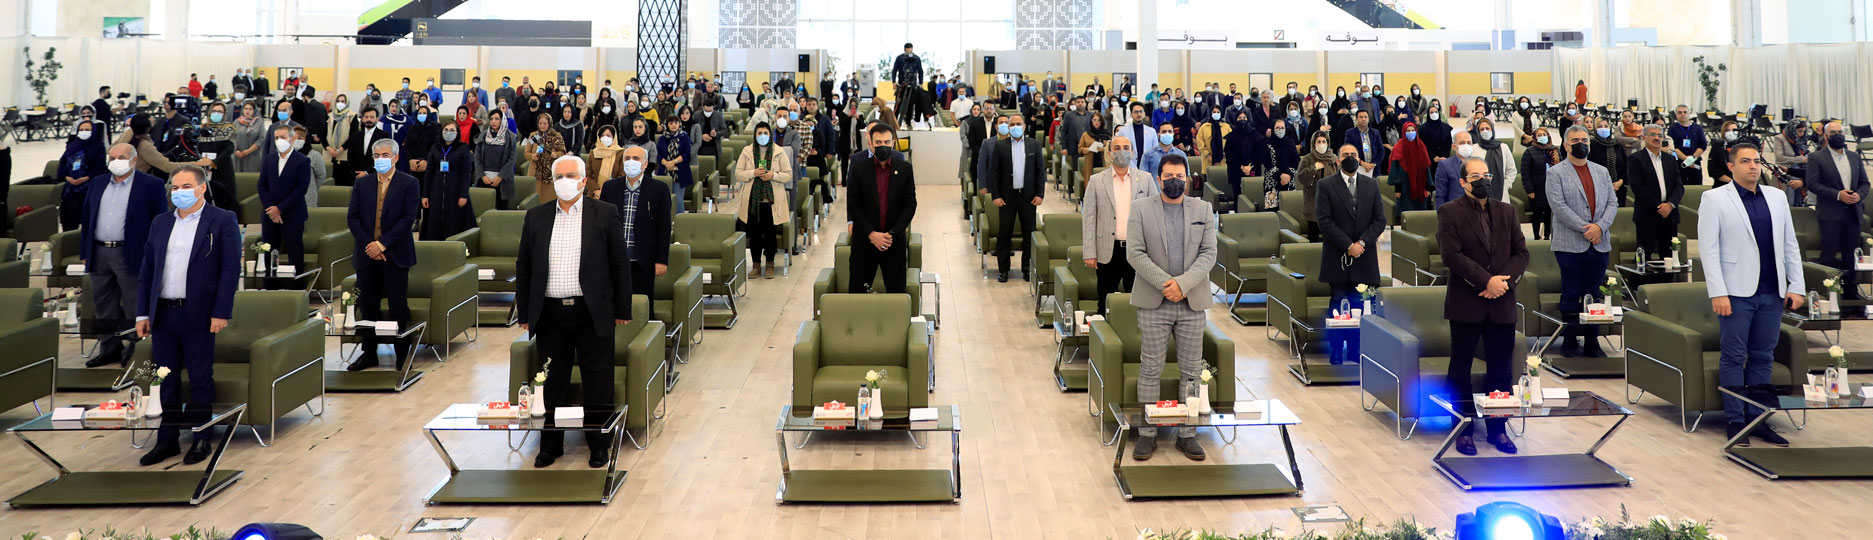 Le centre d'exposition d'Iran est devenu le théâtre d'appréciation des anges de la santé